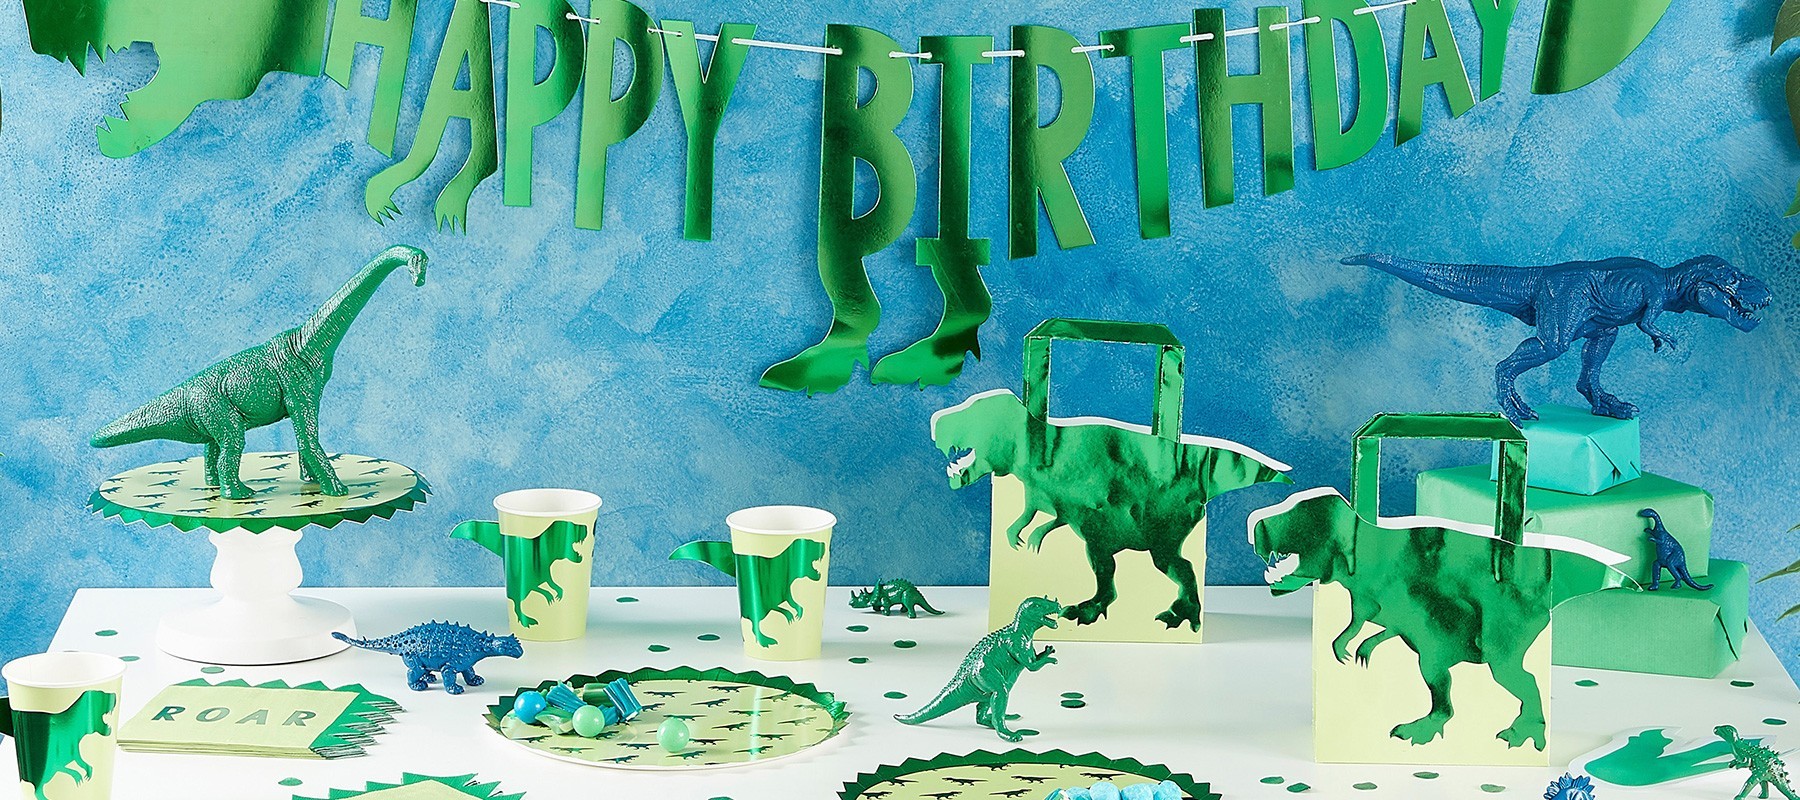 Anniversaire dinosaure : décorations anniversaire pré-historique